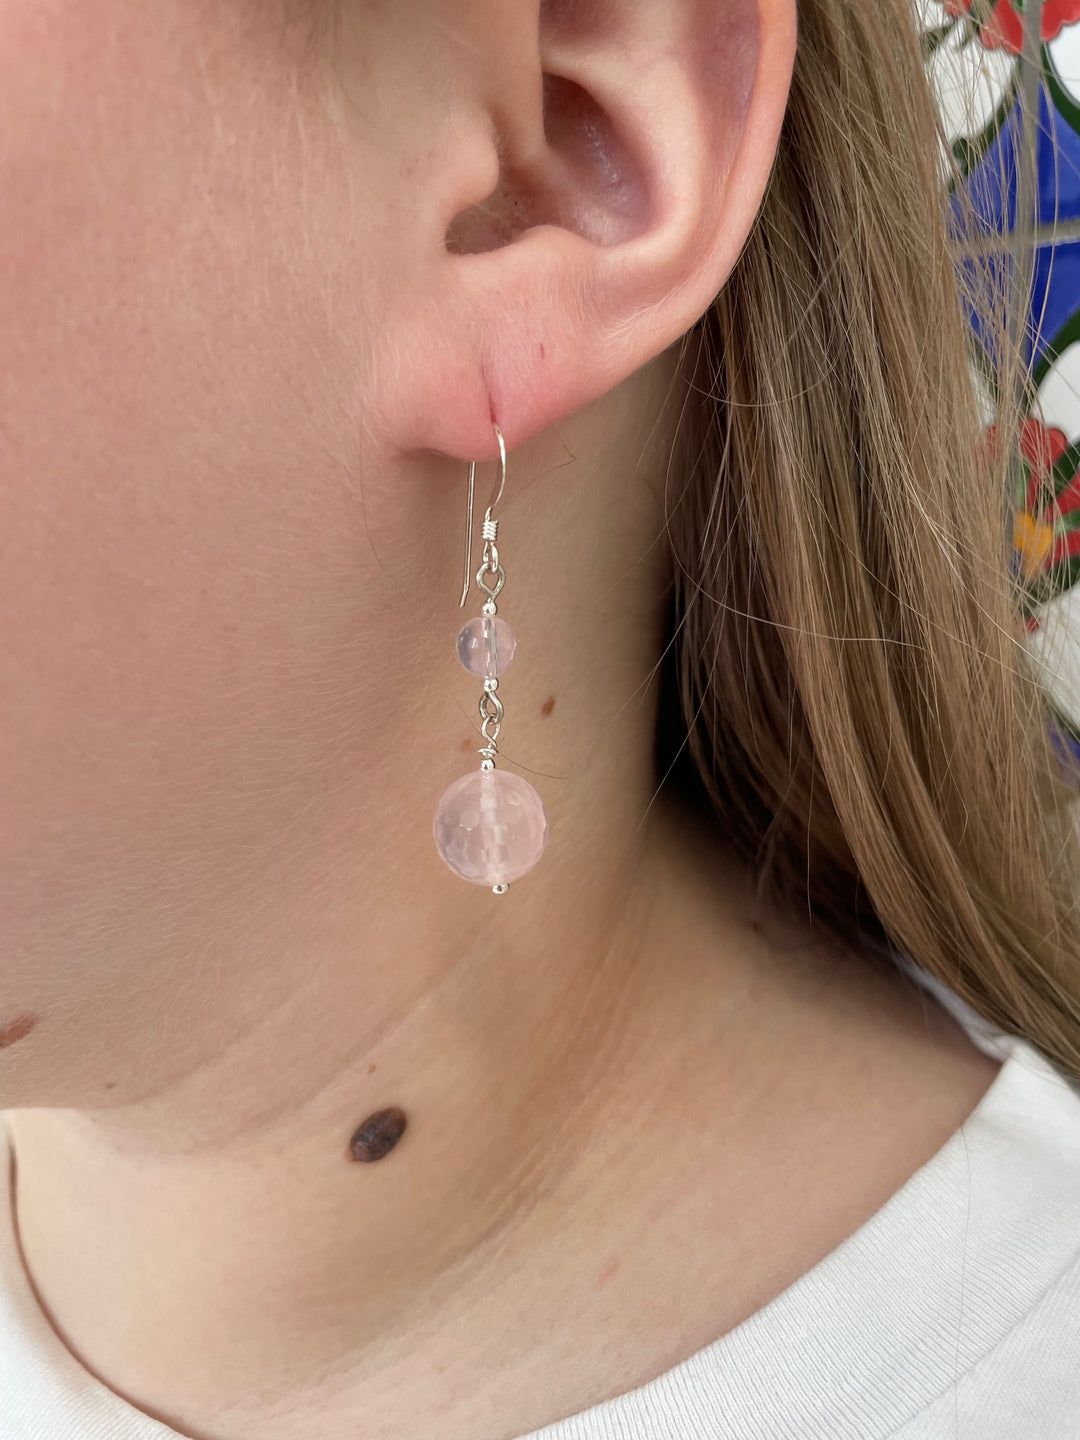 2 tier rose quartz earrings